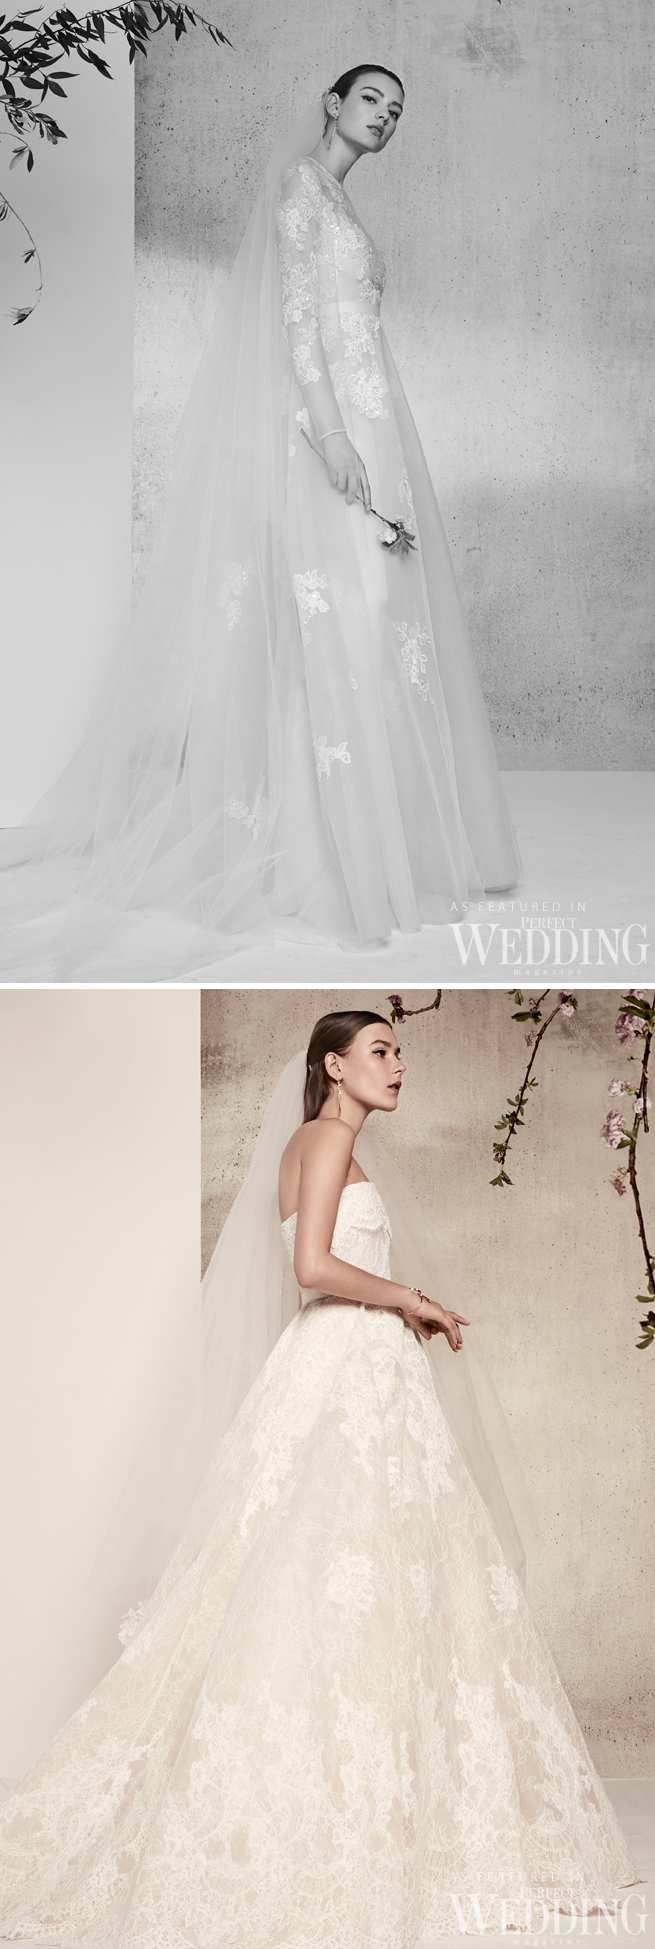 Elie Saab, Elie Saab Bridal, Elie Saab RTW Bridal, In Blomm, Elie Saab 2018 bridal, Perfect Wedding Magazine, Perfect Wedding Blog, 2018 bridal trends, haute couture